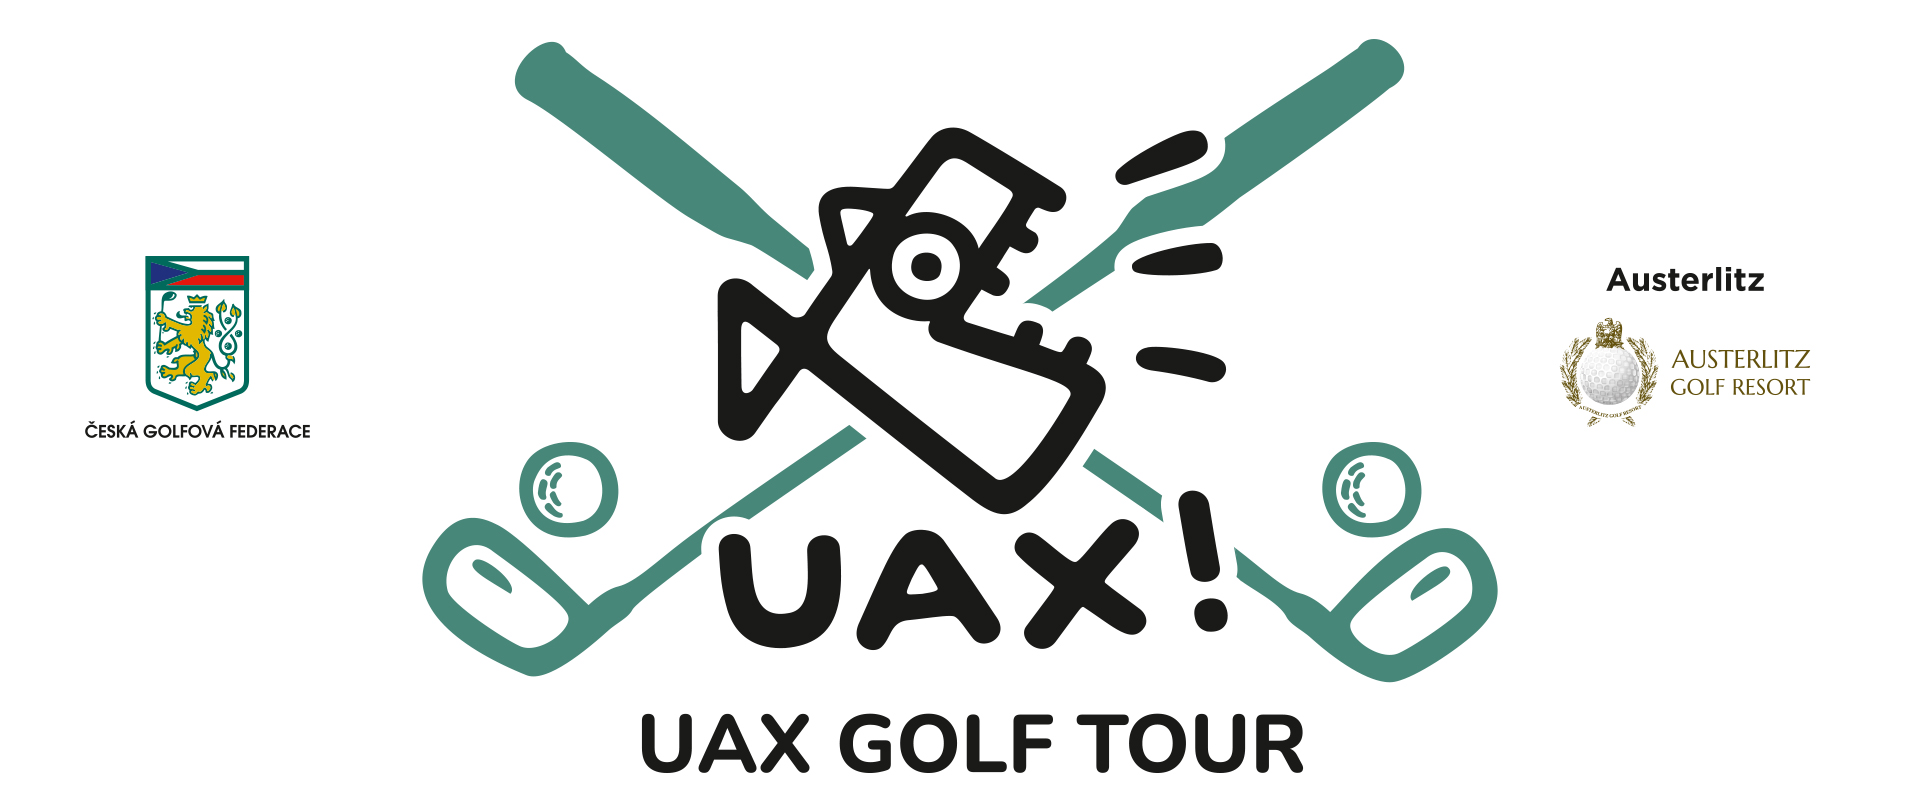 UAX Golf Tour Austerlitz